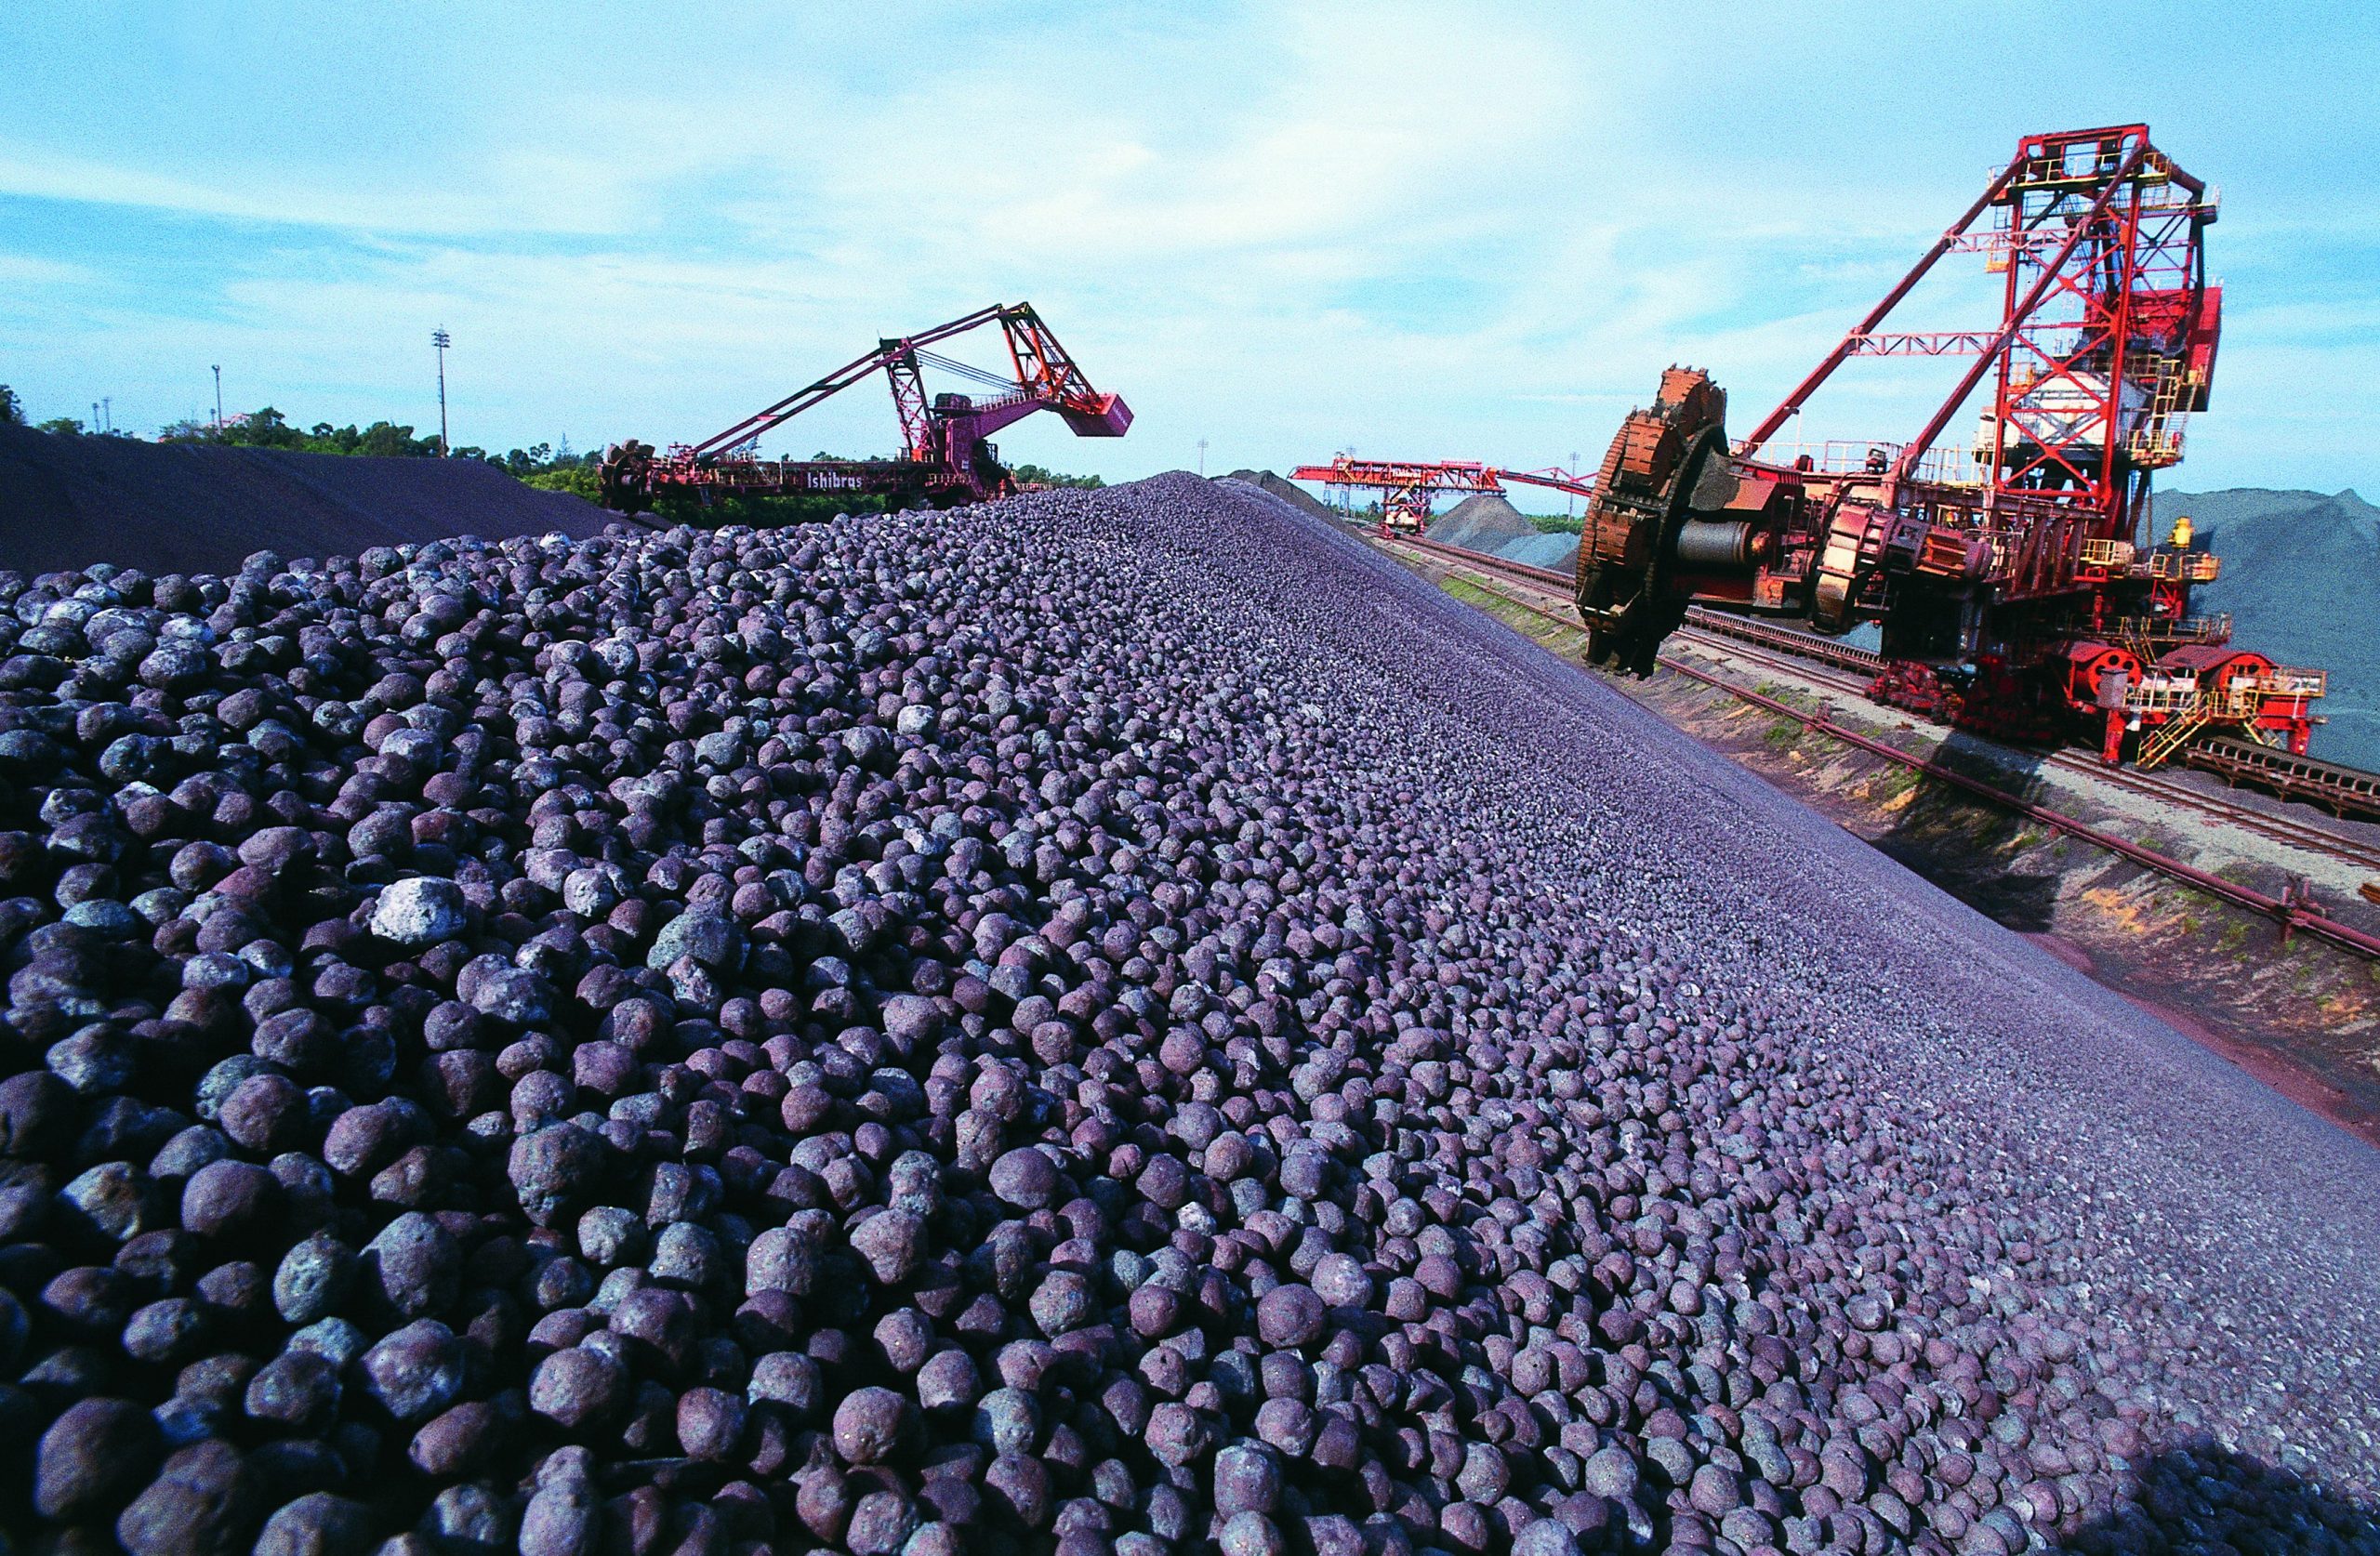 O projeto de expansão da companhia no mercado da mineração nacional contará com um investimento bilionário nos próximos anos. A Buritirama cogita expandir a produção de manganês com baixo teor nas instalações do Pará.